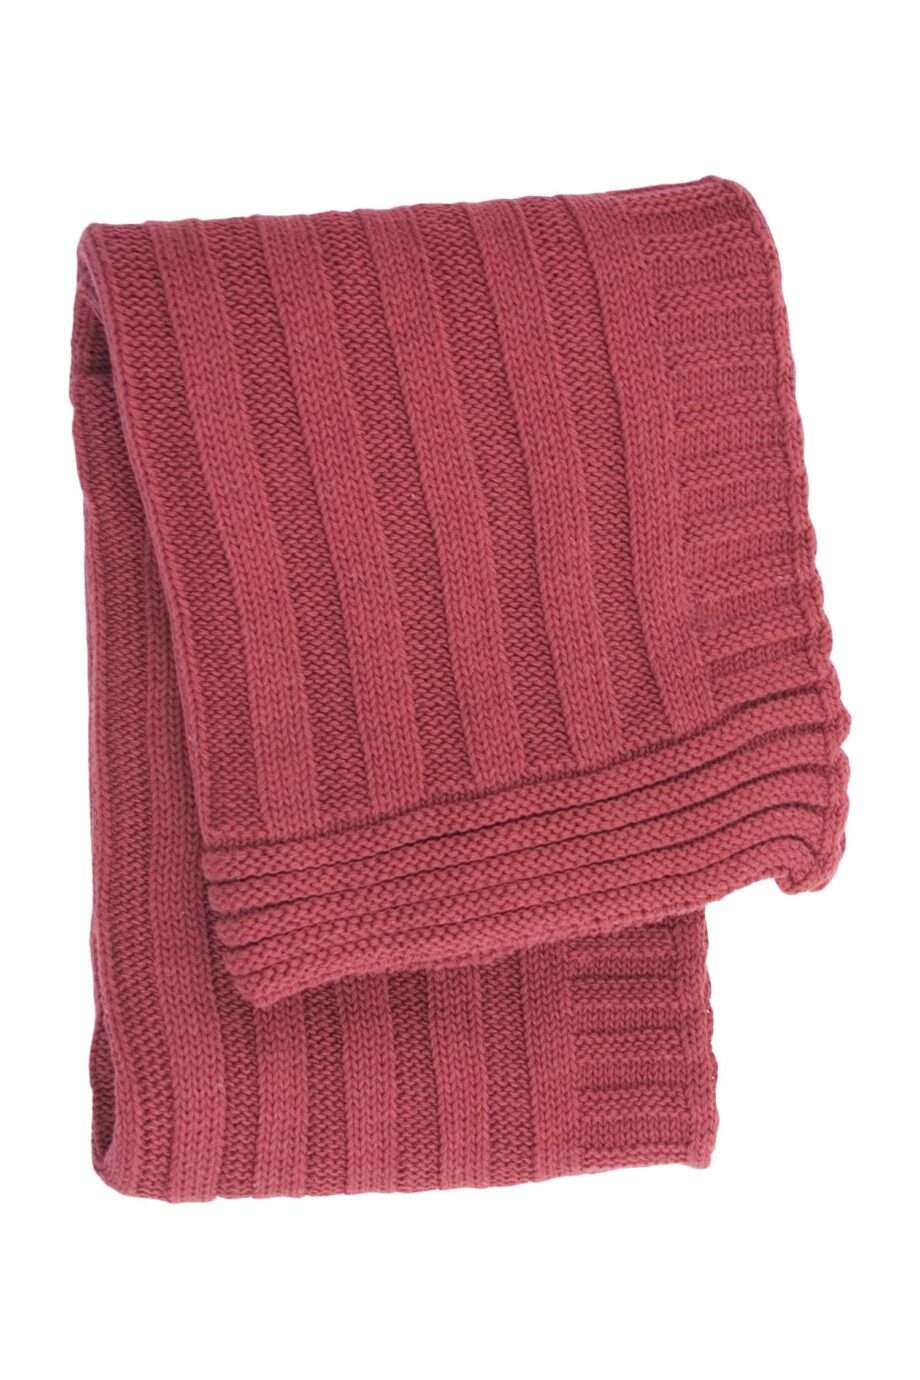 ribs chillipepper knitted cotton little blanket medium